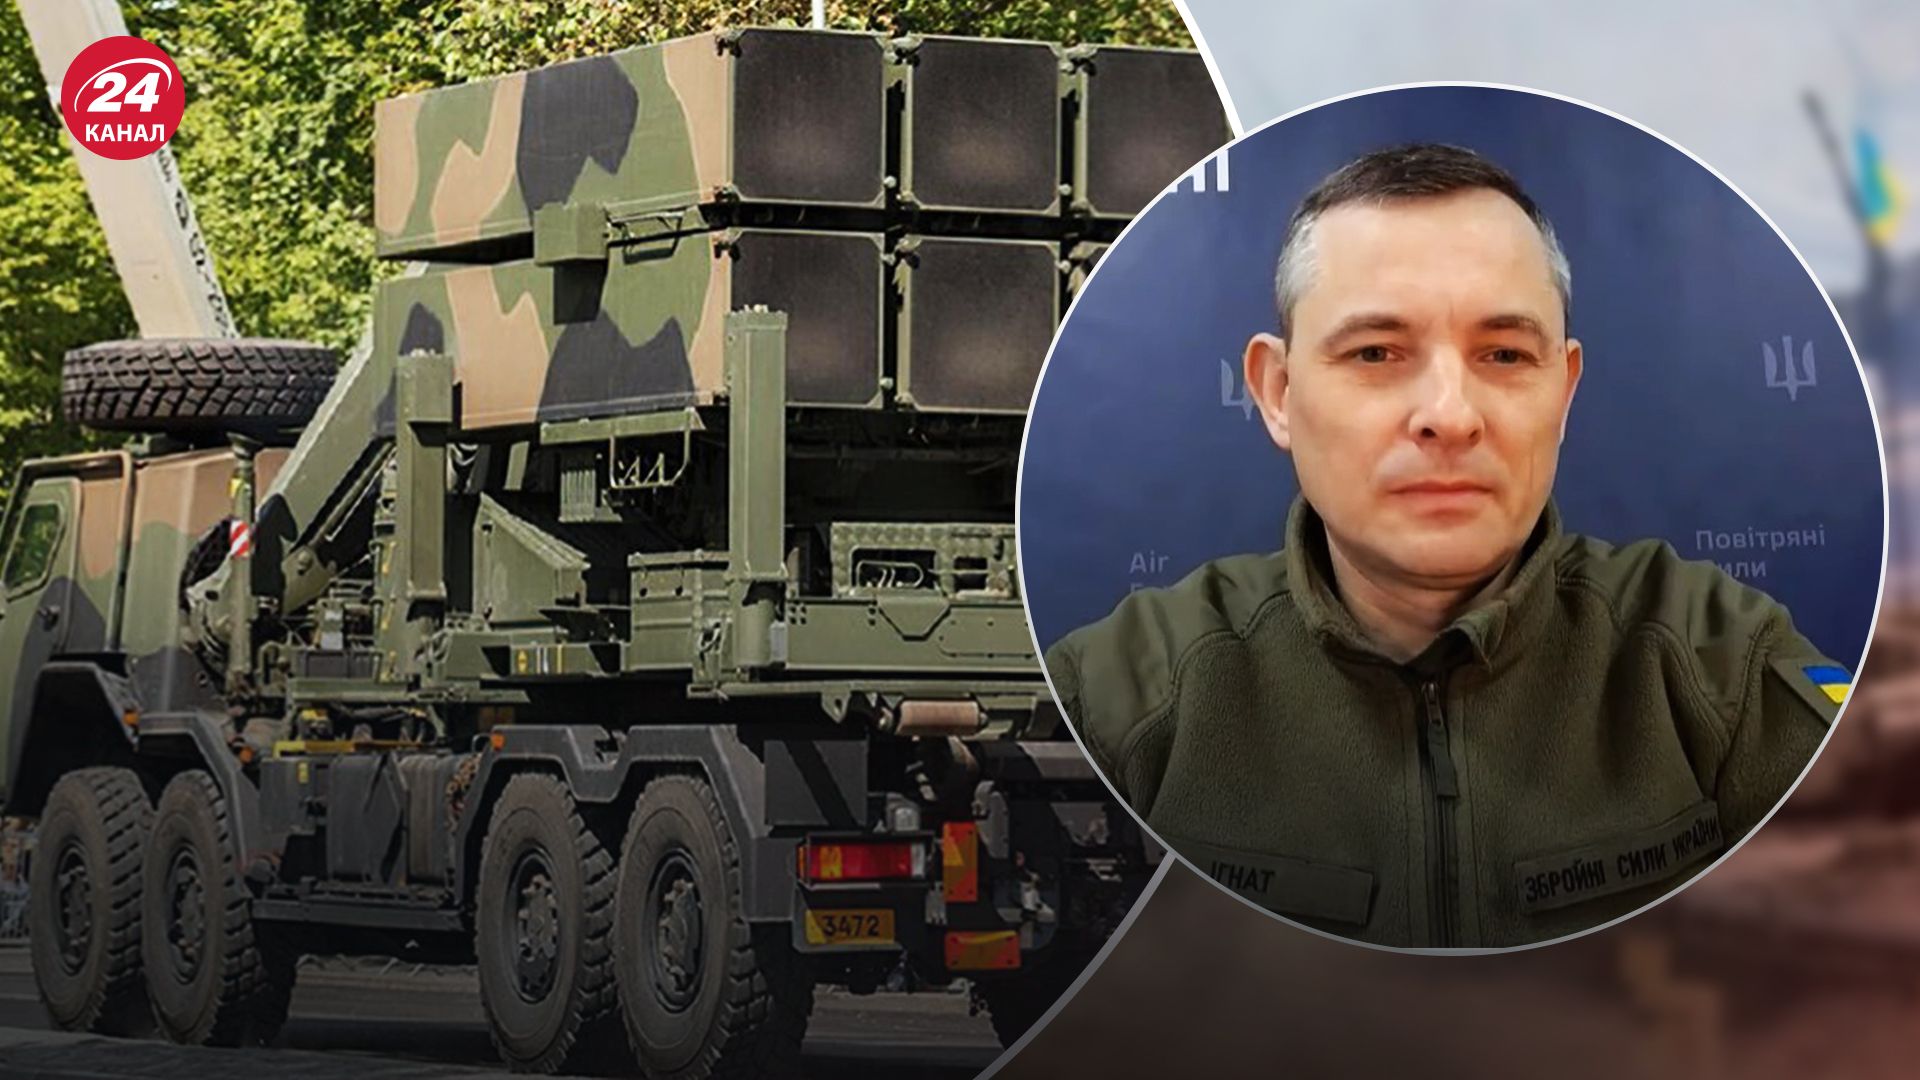 Игнат рассказал о современных системах ПВО на вооружении Украины